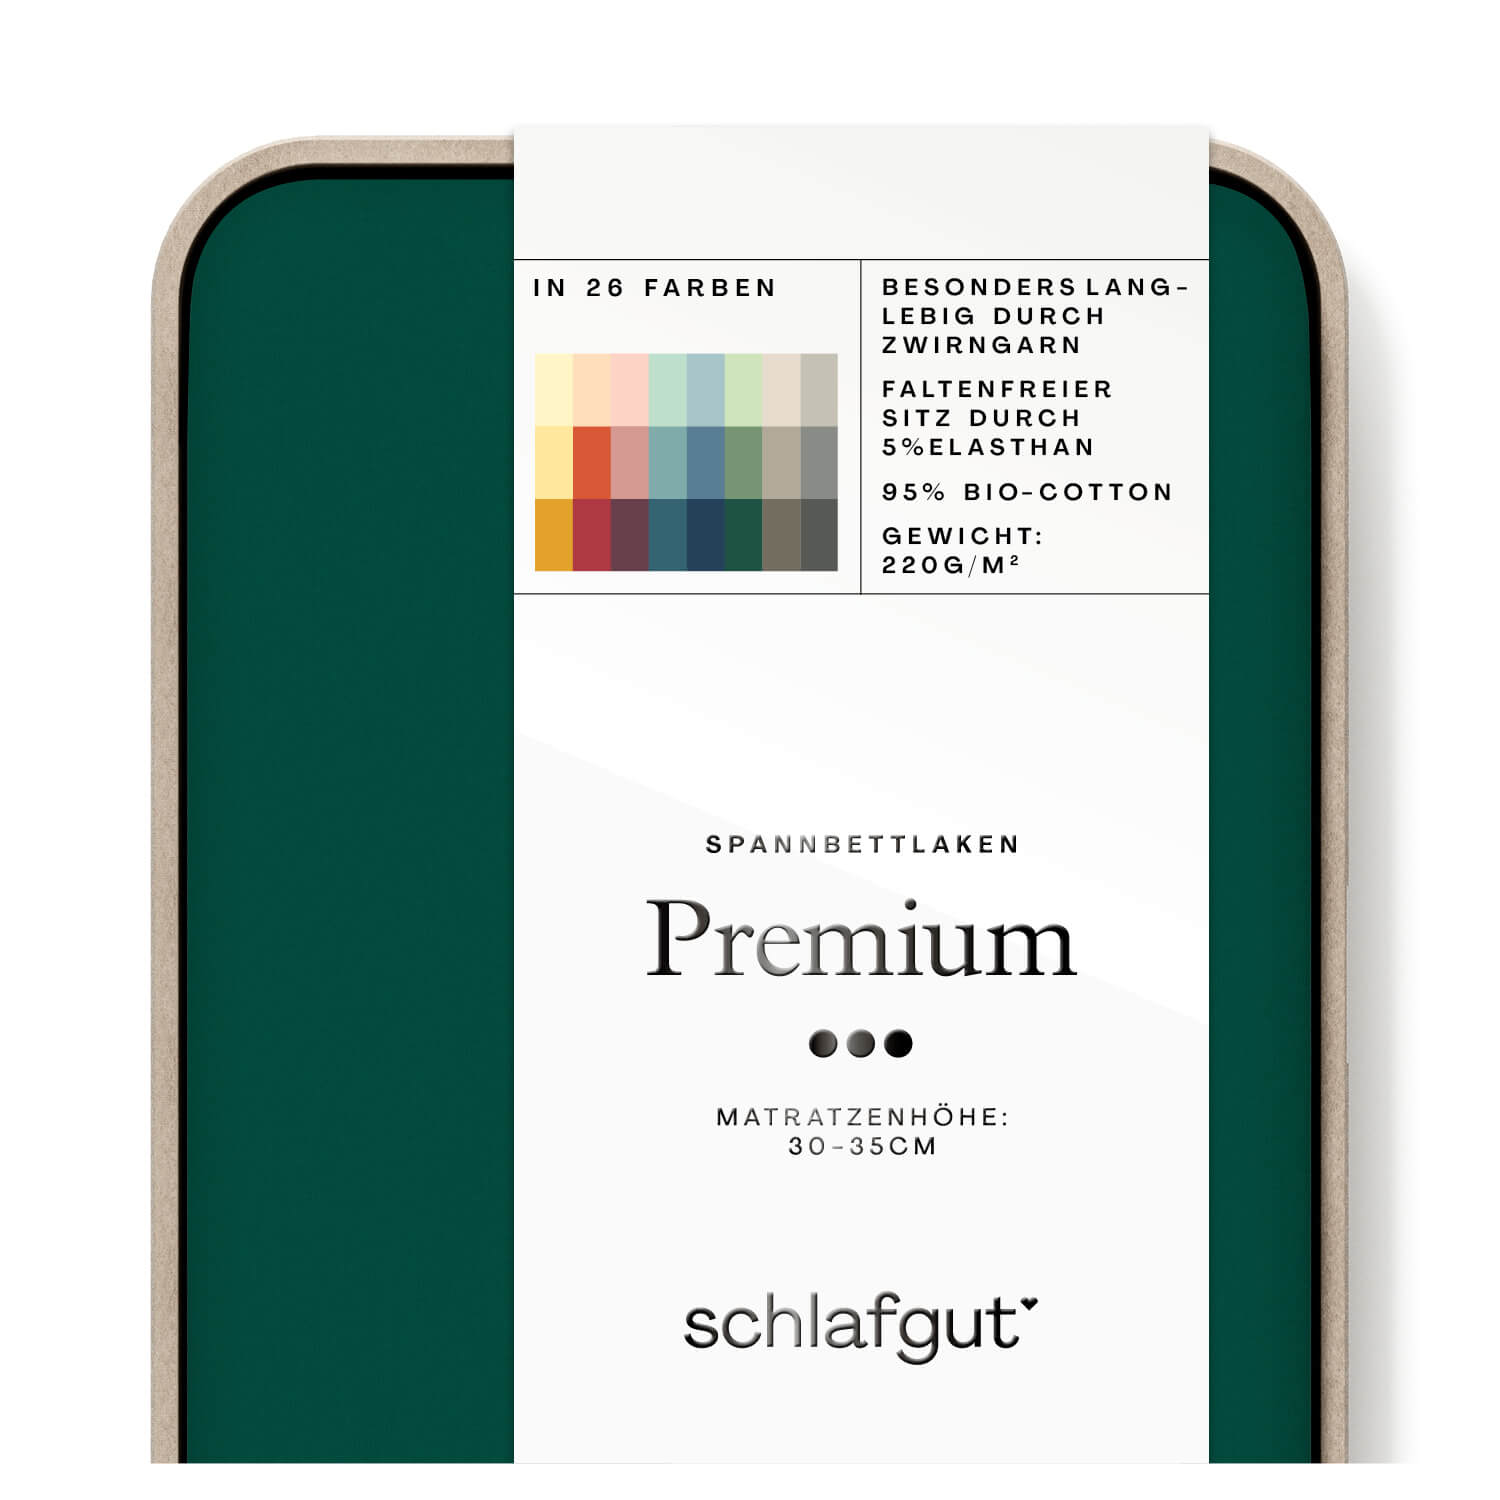 Das Produktbild vom Spannbettlaken der Reihe Premium in Farbe green dark von Schlafgut